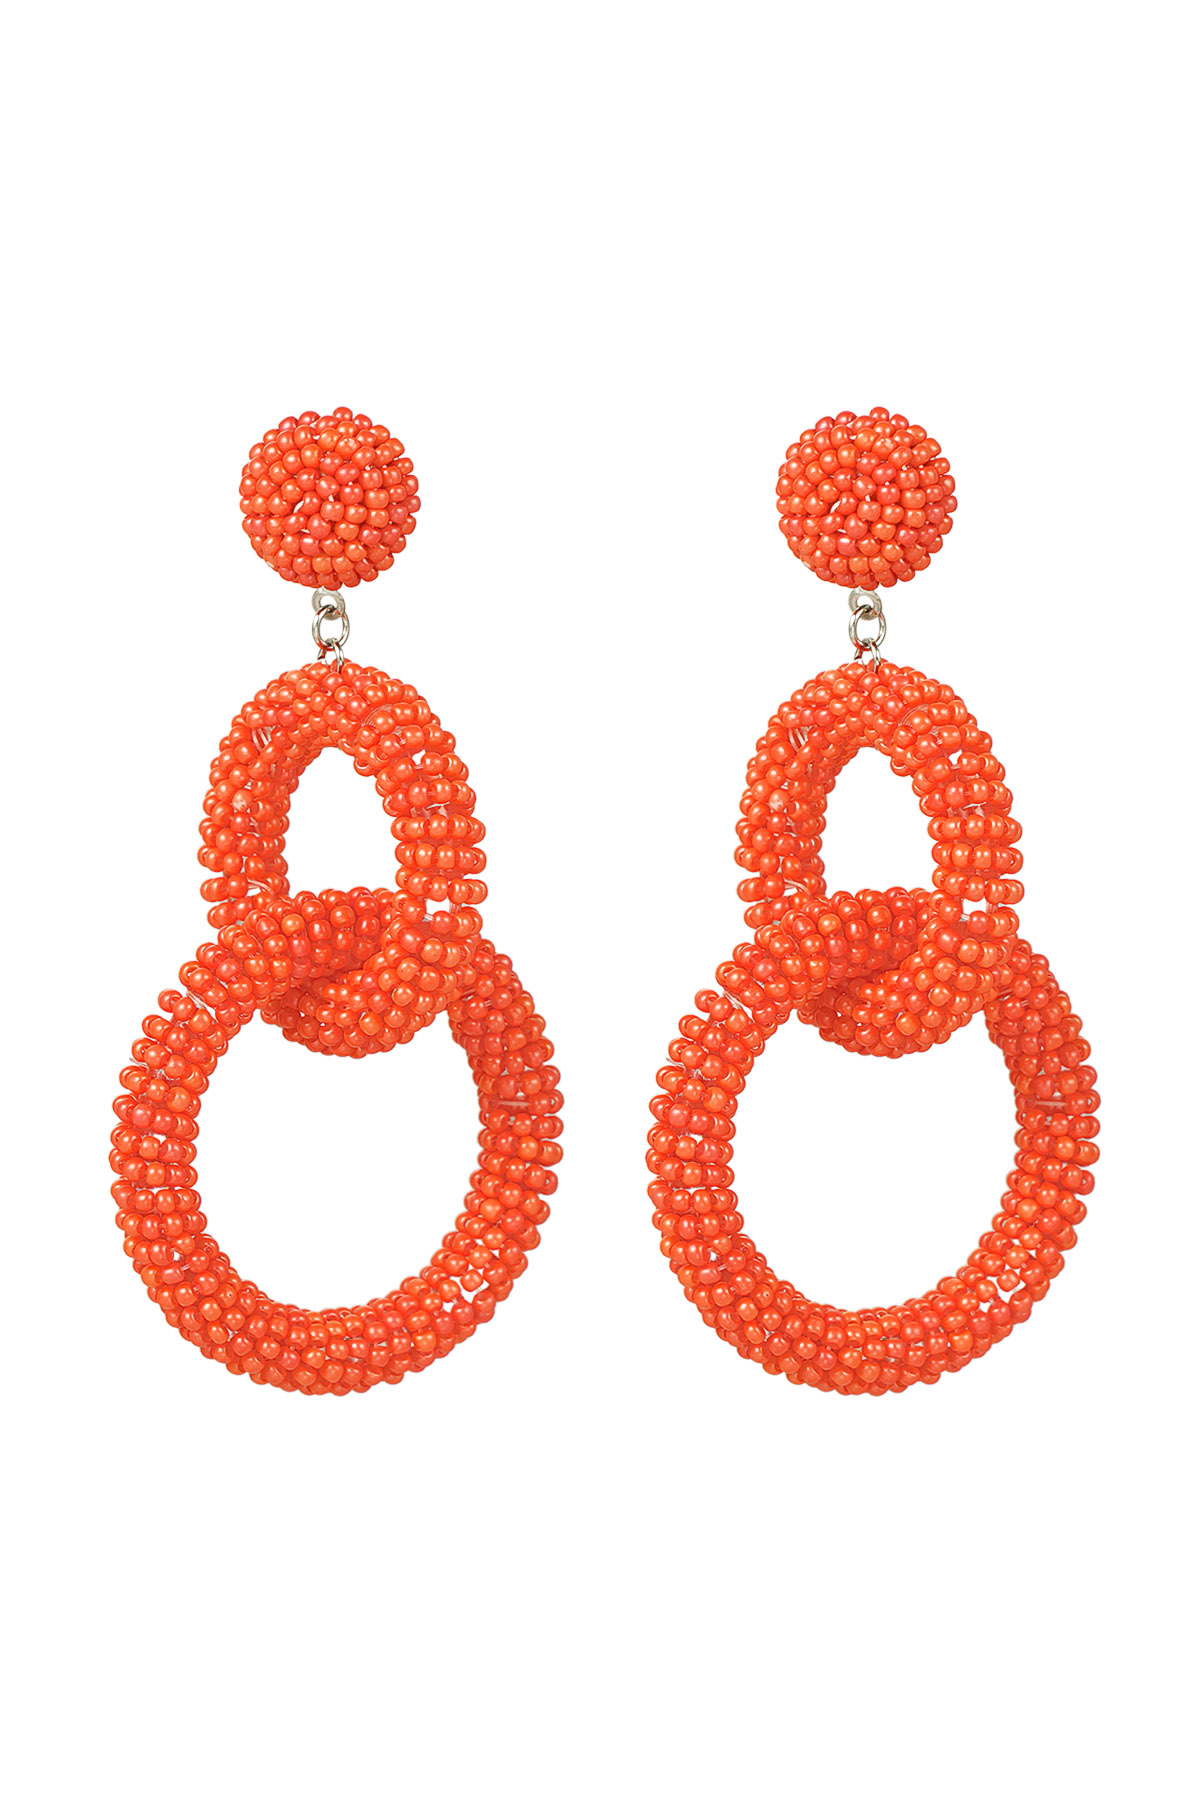 Perlenohrringe gehäkelt - orange h5 